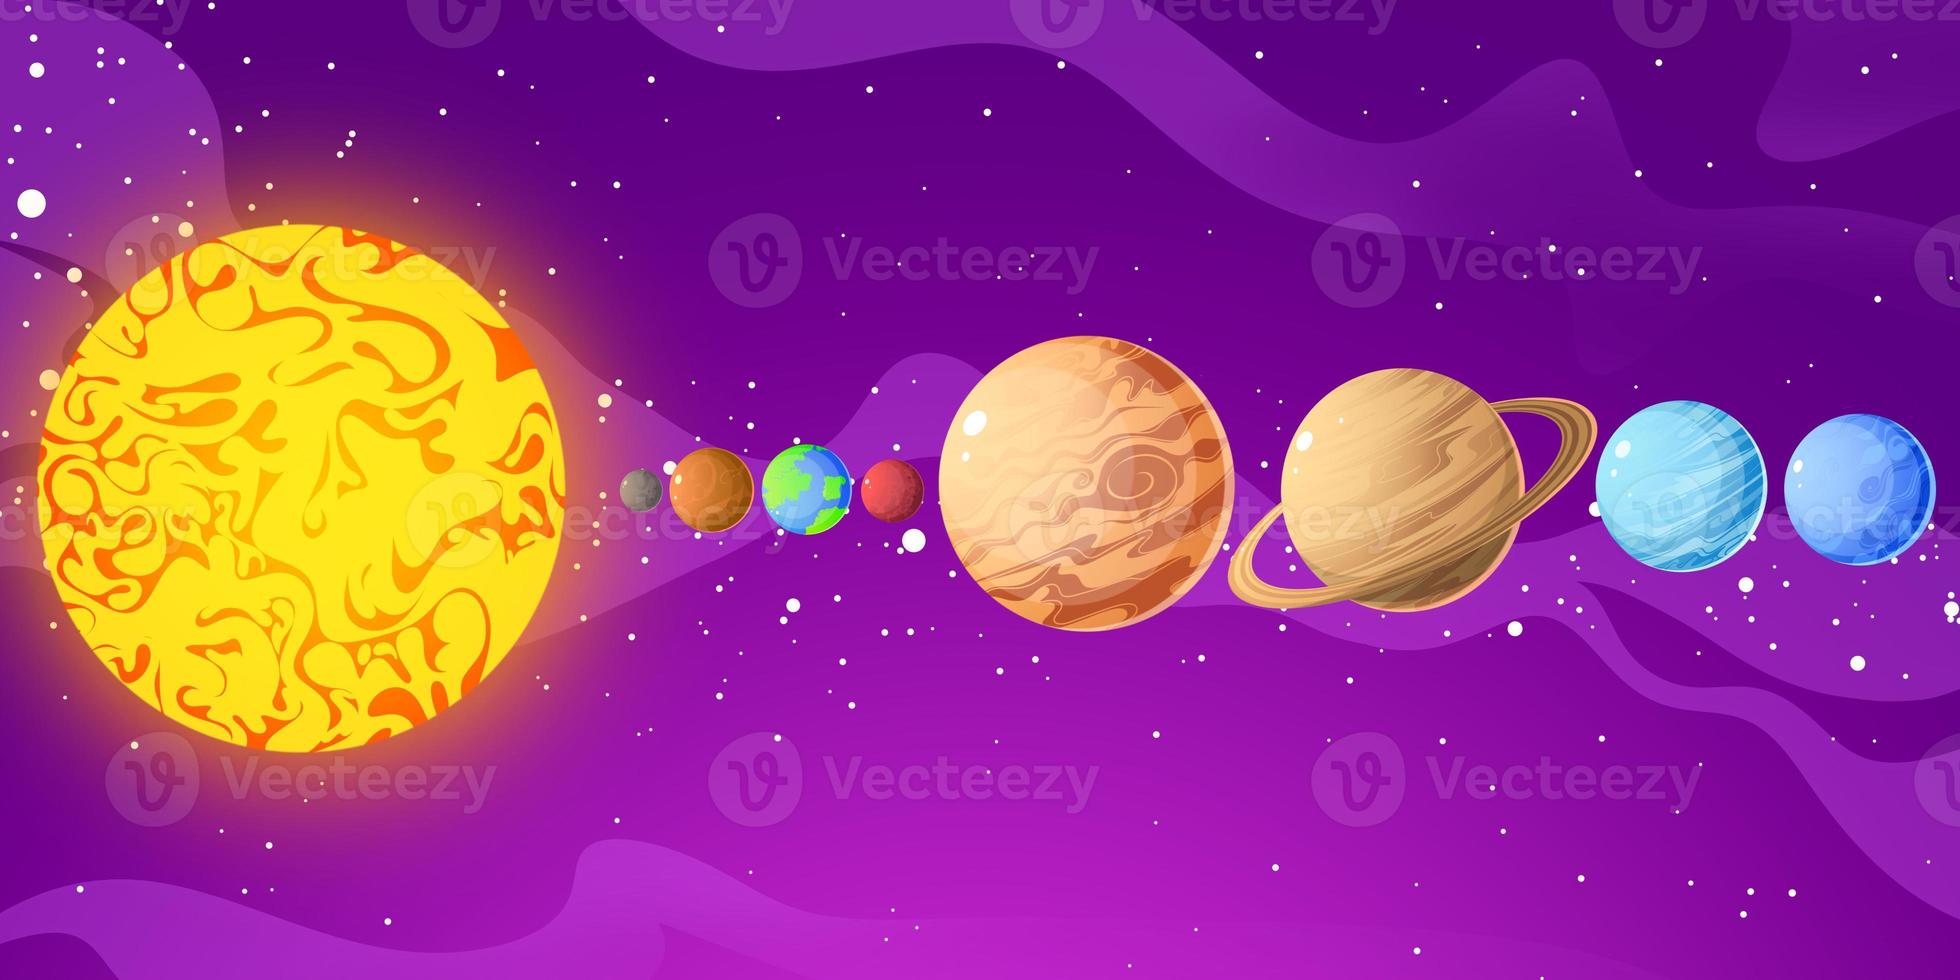 ilustração do sistema solar. cada estrela tem seu próprio sistema solar com planetas diferentes foto